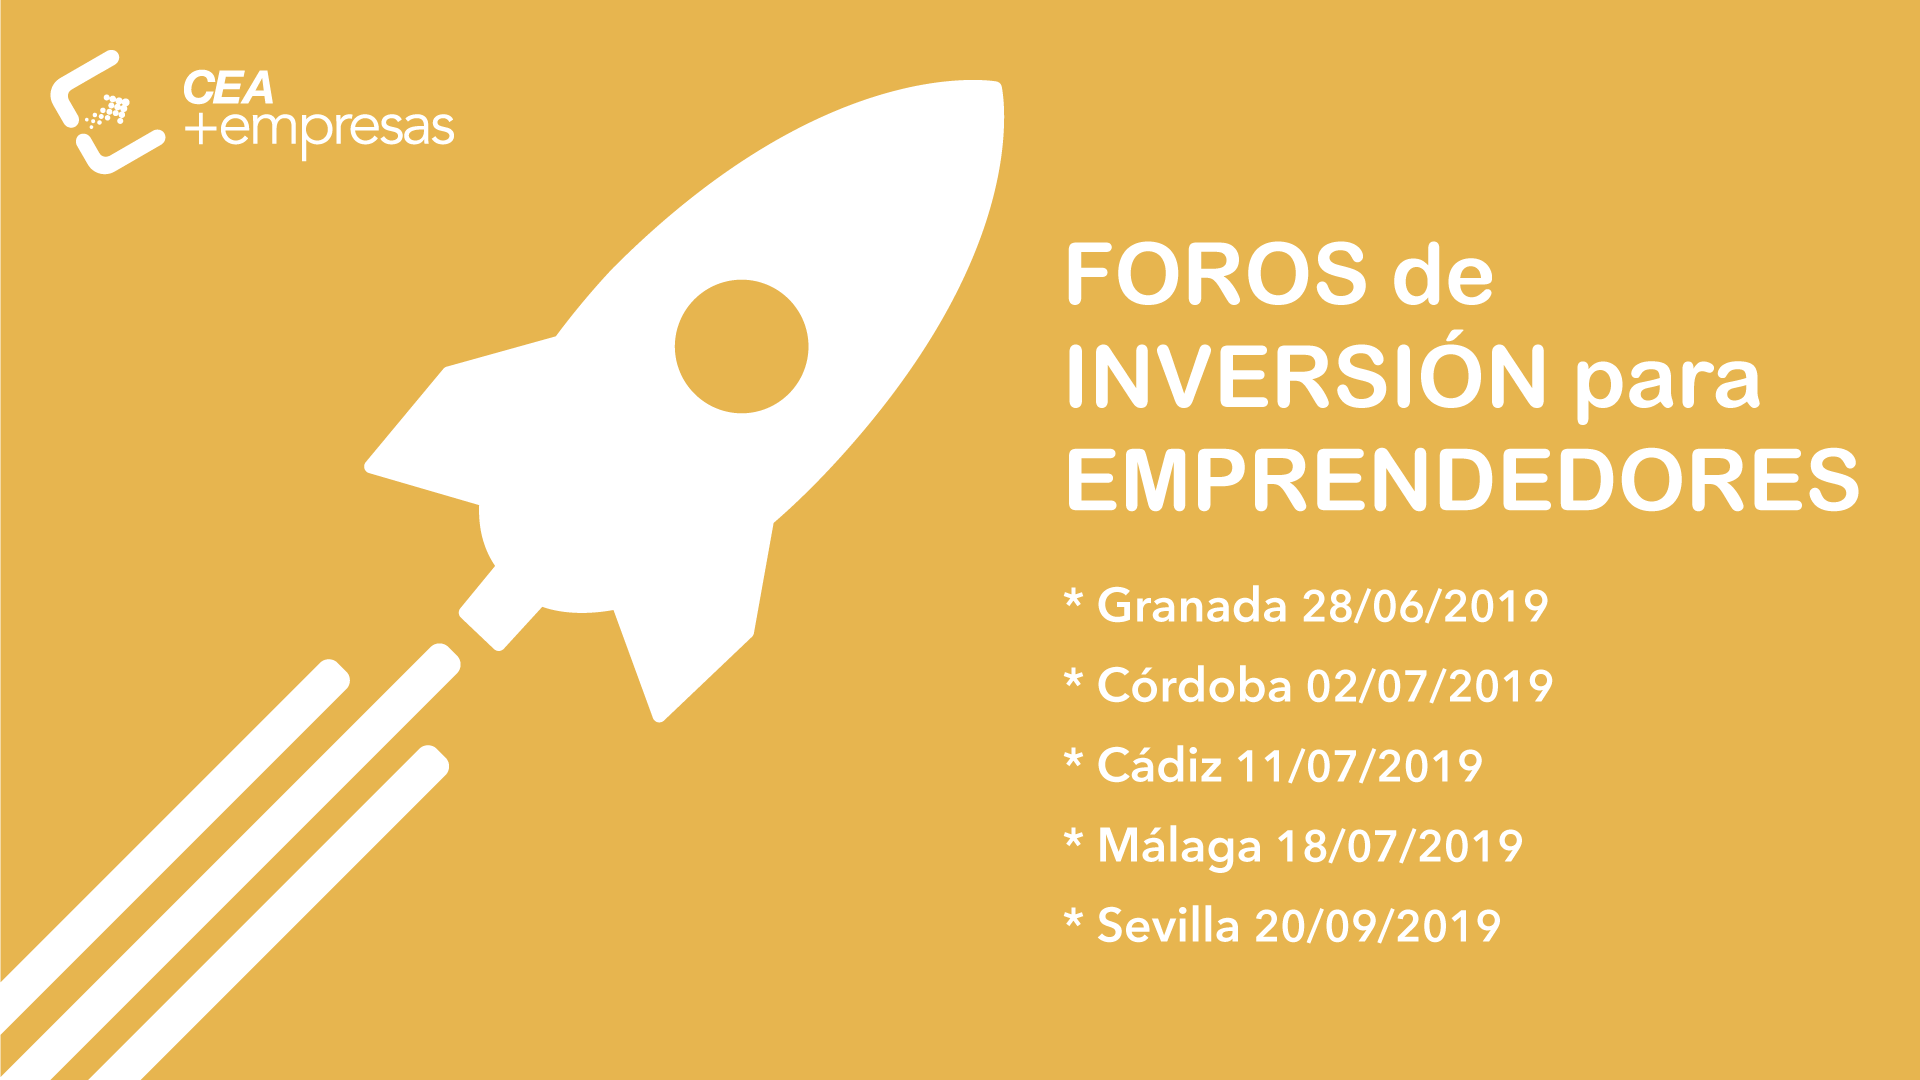 CEA promueve reuniones de emprendedores e inversores por toda Andalucía para facilitar la financiación de proyectos empresariales